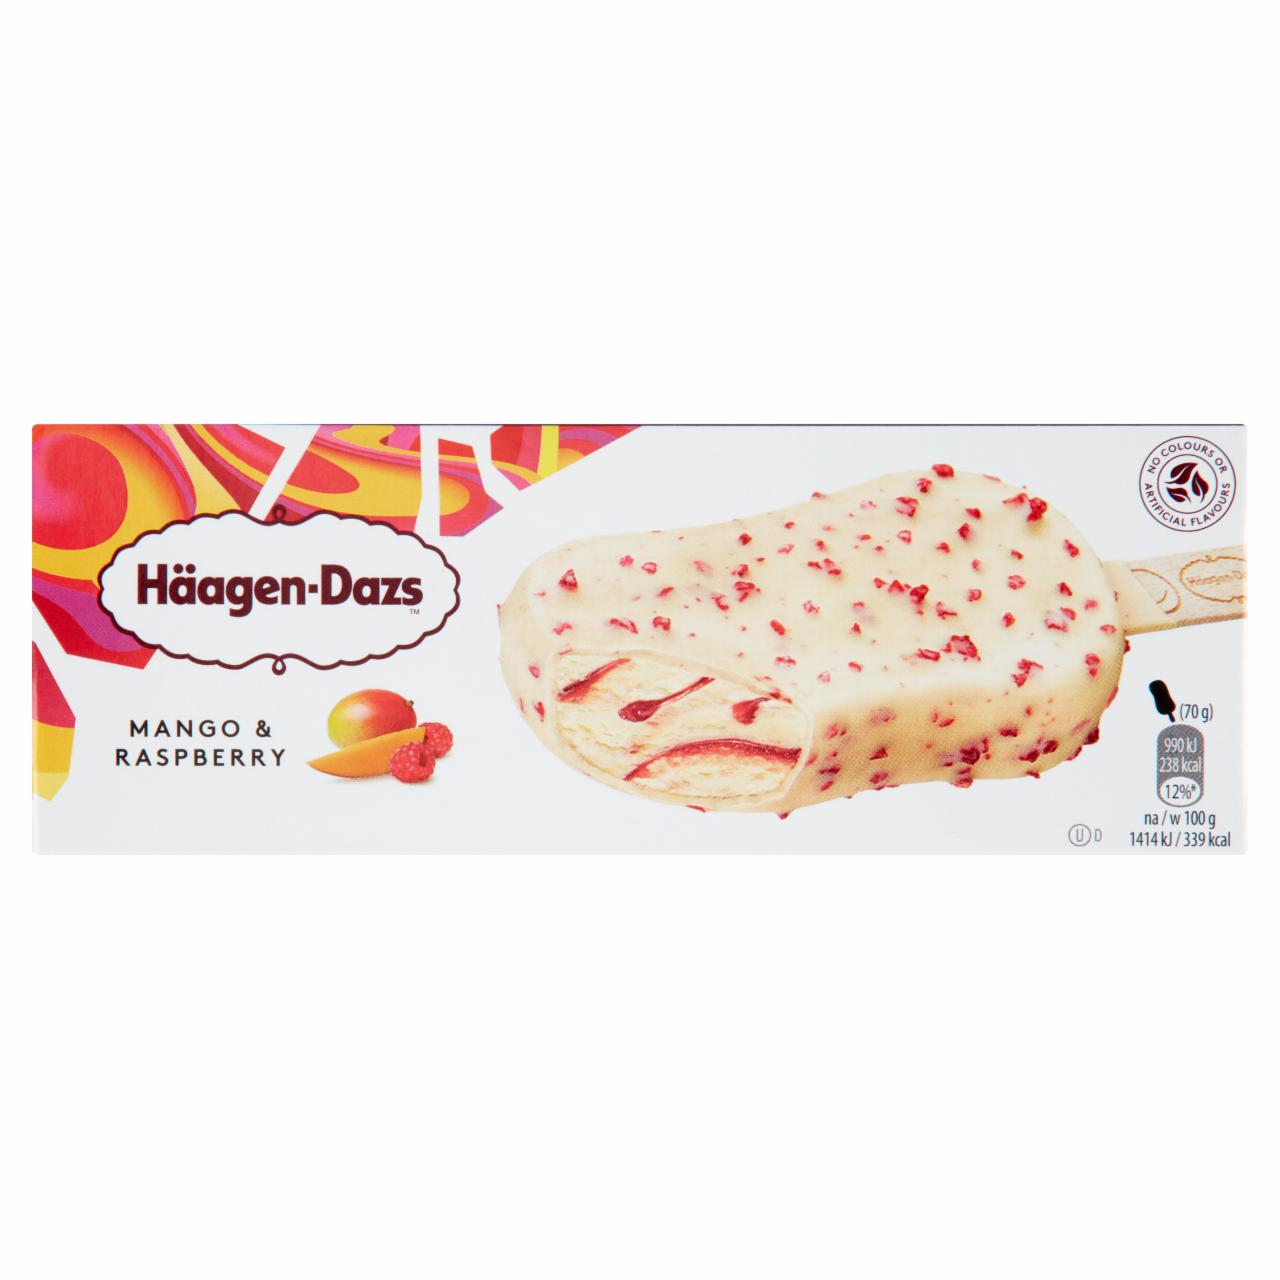 Képek - Häagen-Dazs mangós jégkrém málna öntettel belga fehér csokoládé bevonattal és málnadarabokkal 80 ml